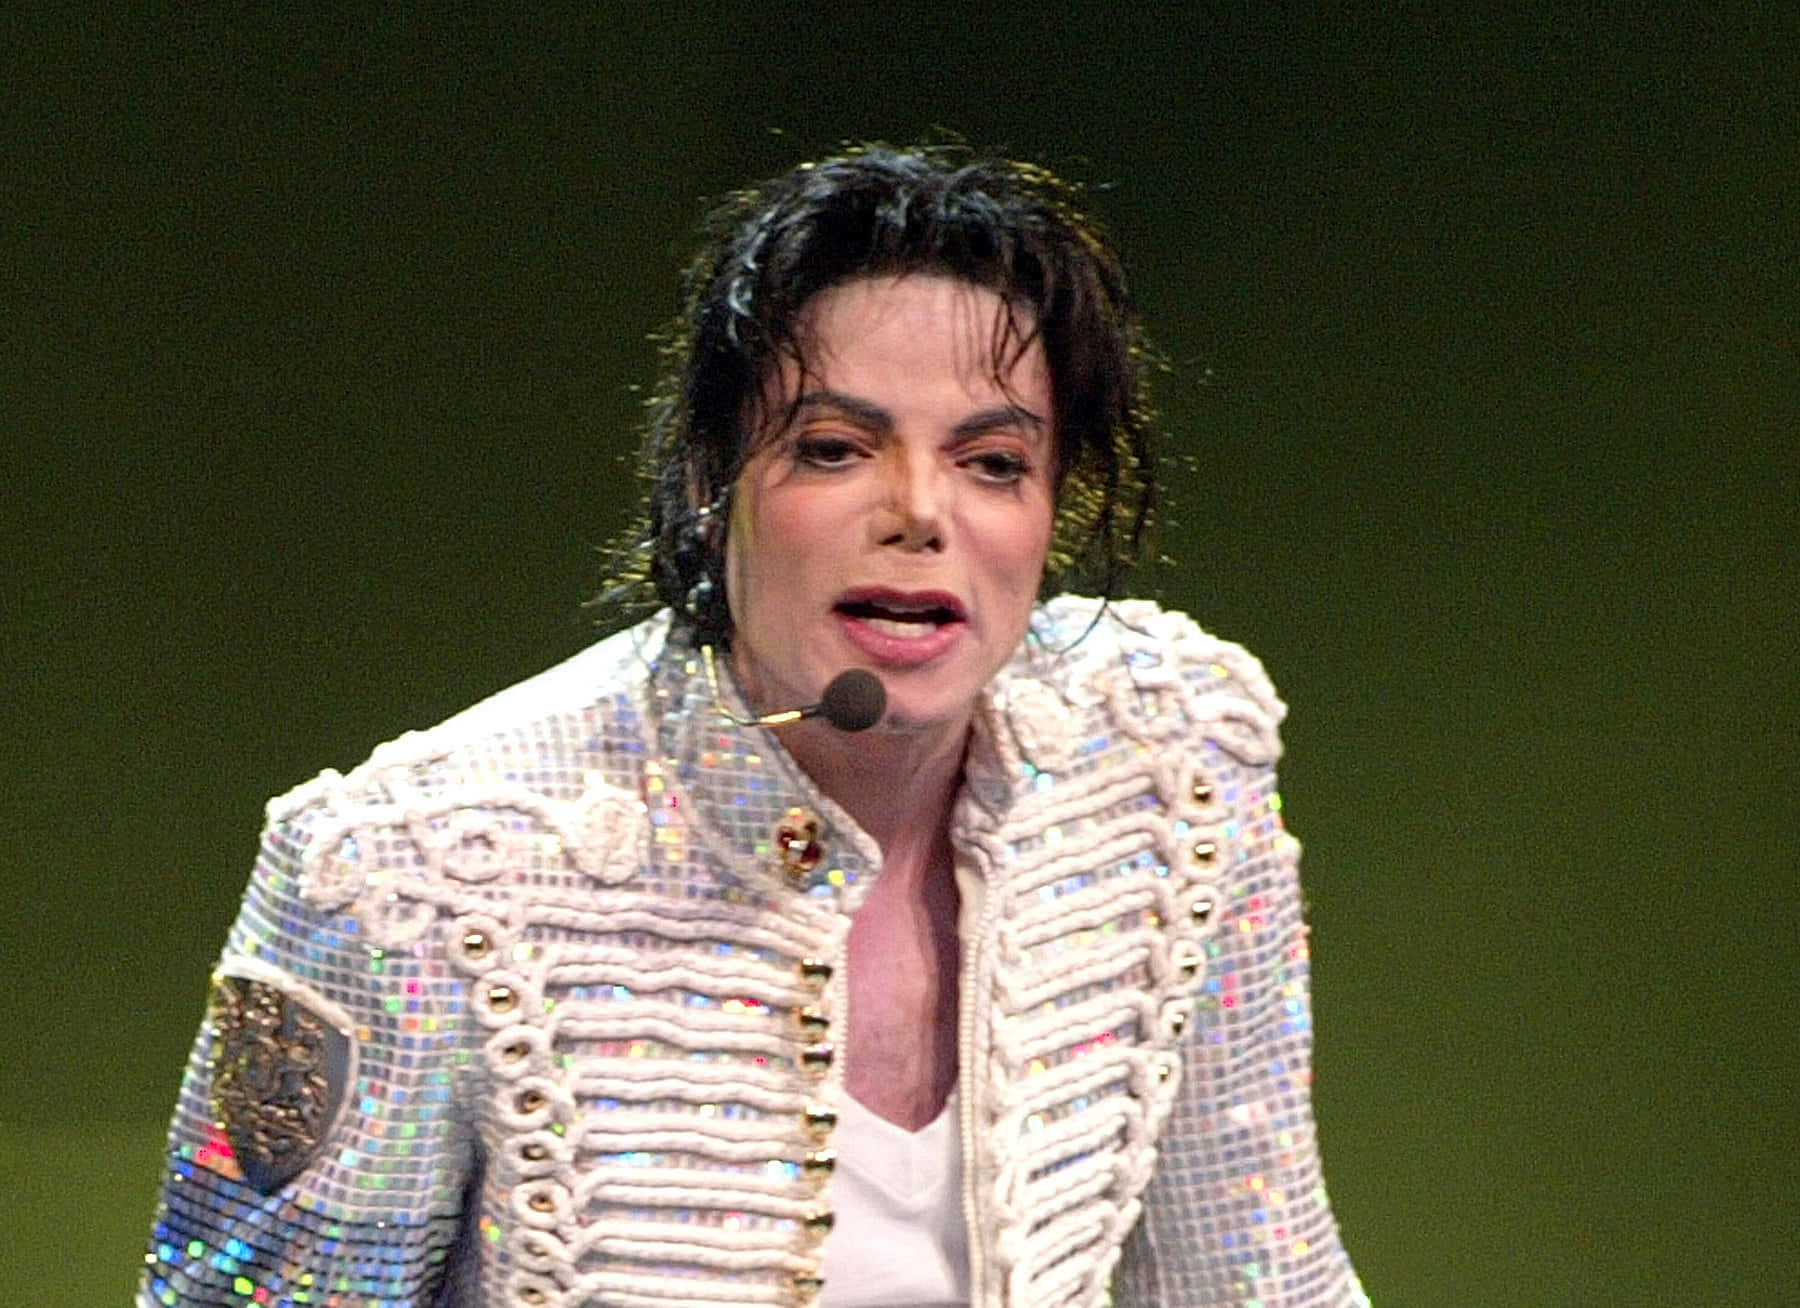 Billeder af Michael Jackson på en lysere baggrund